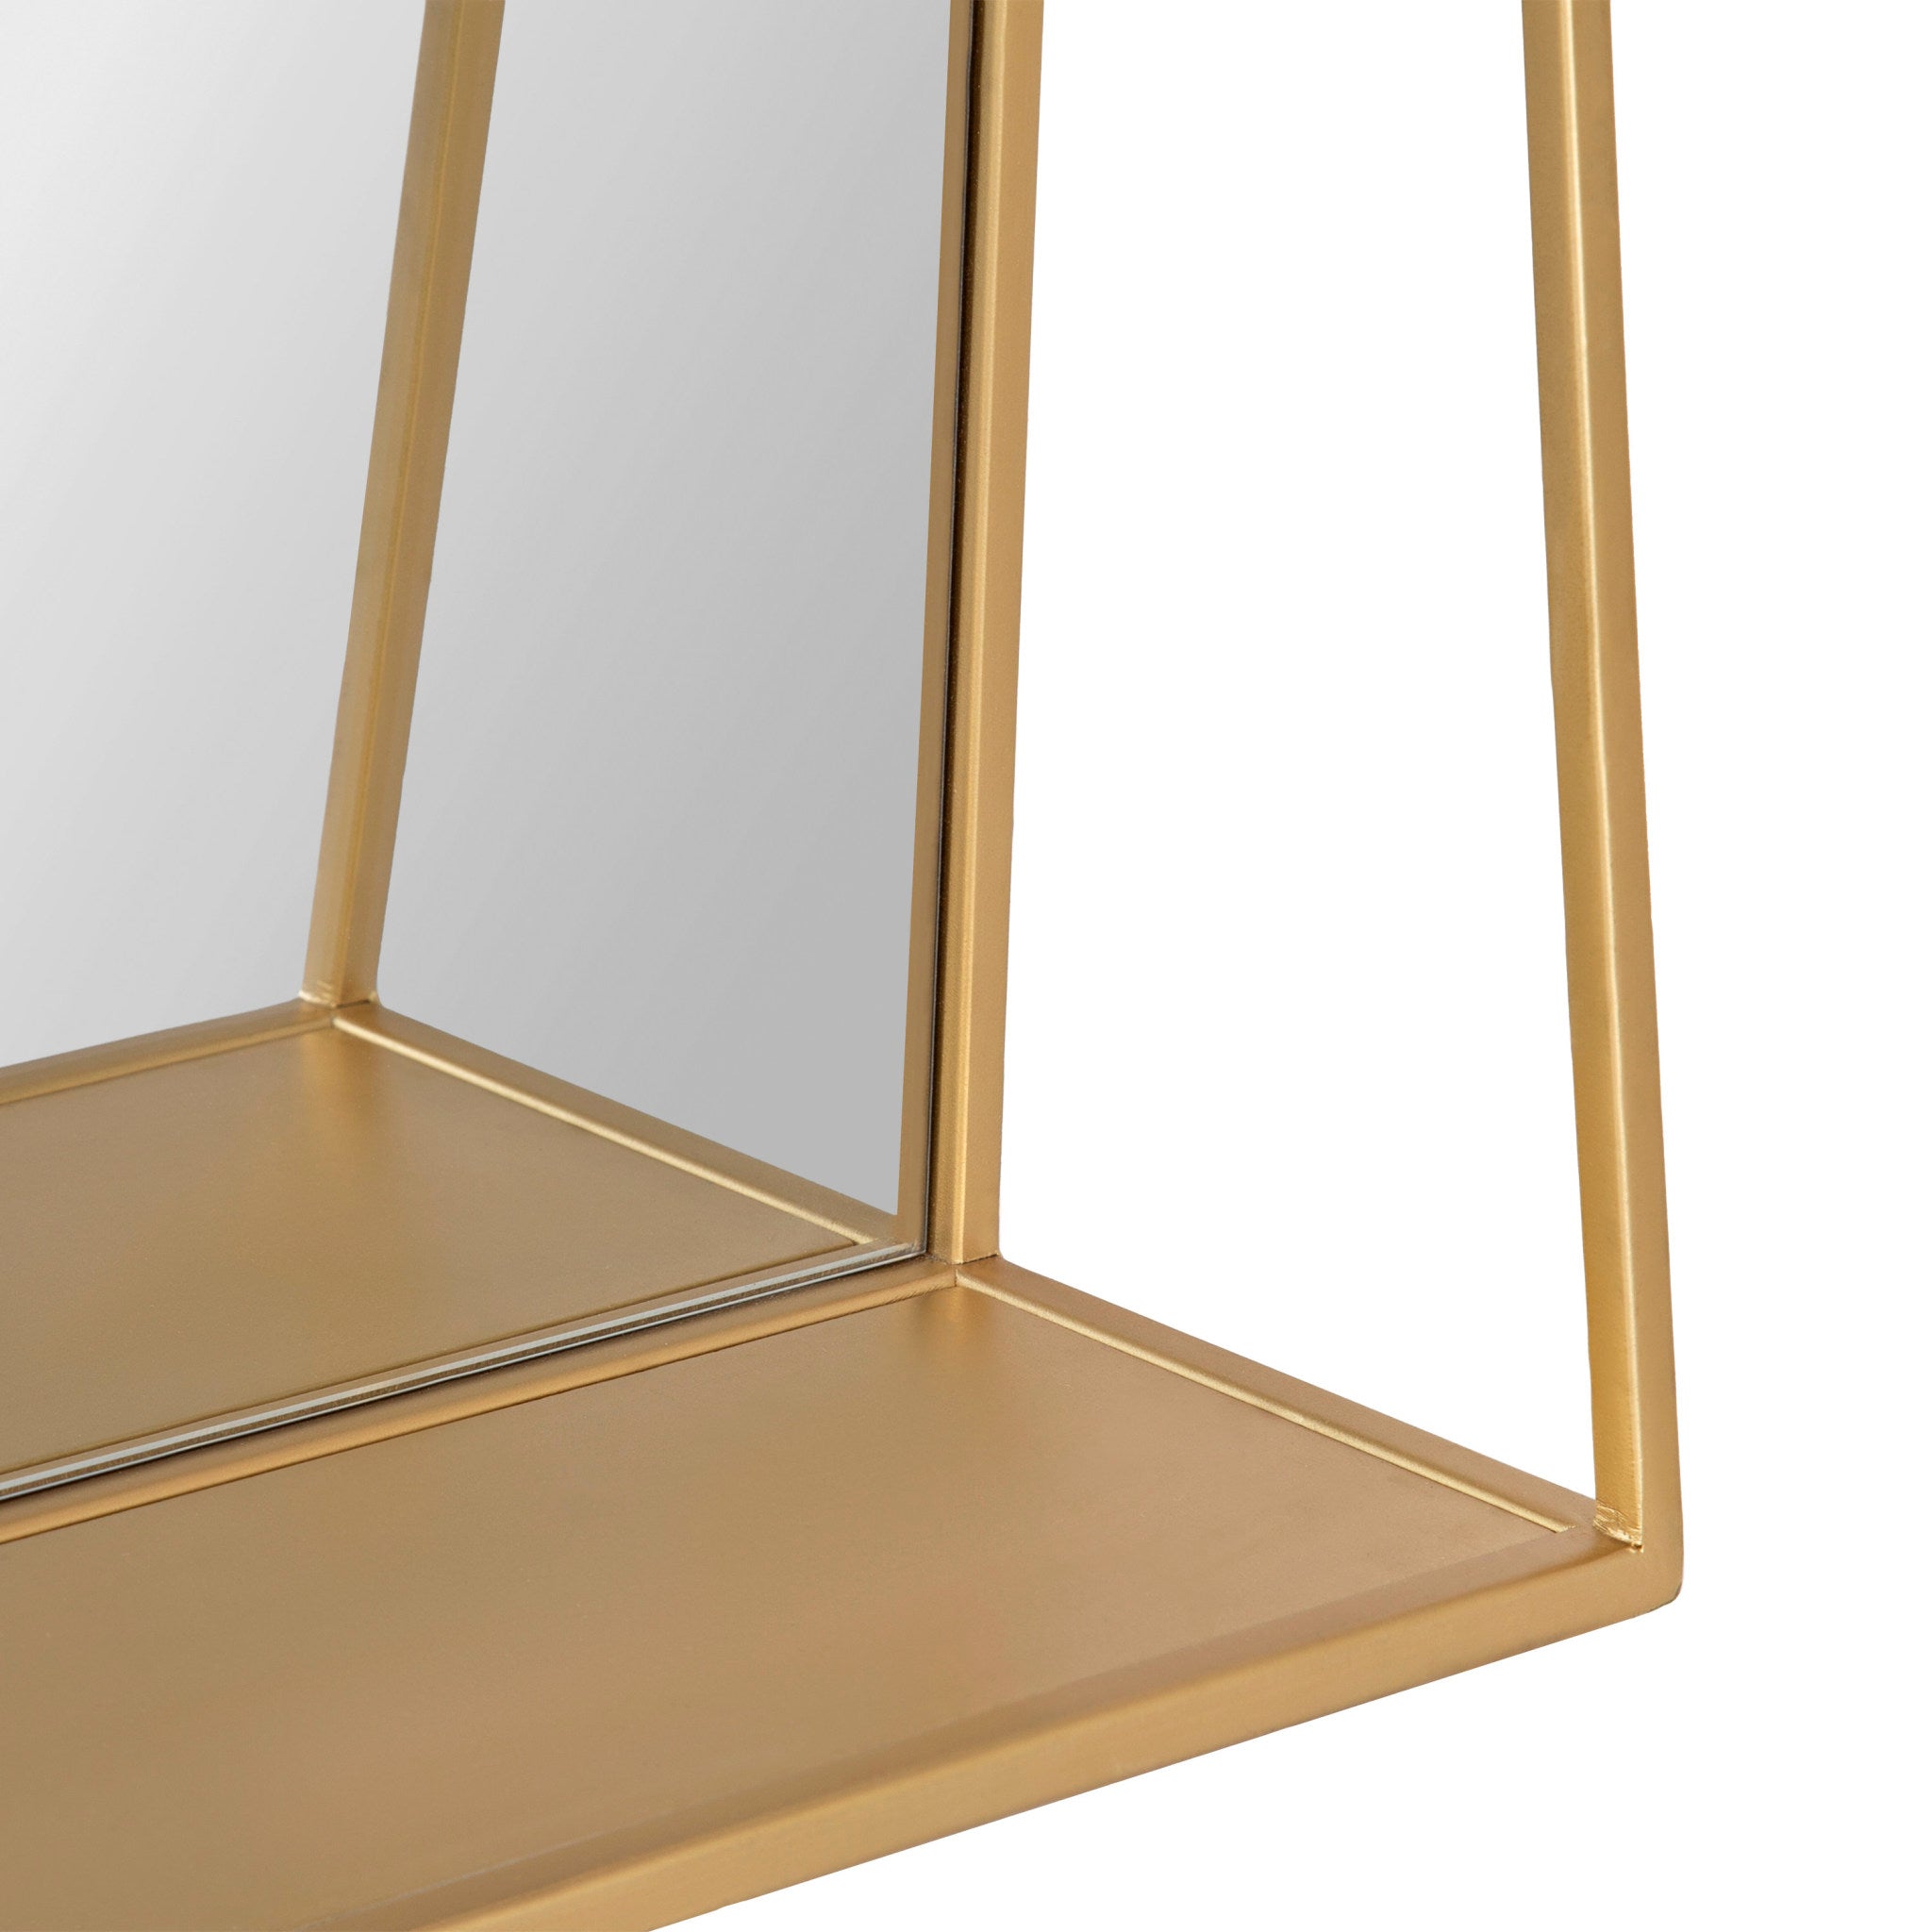 Lintz Metal Framed Mirror with Shelf